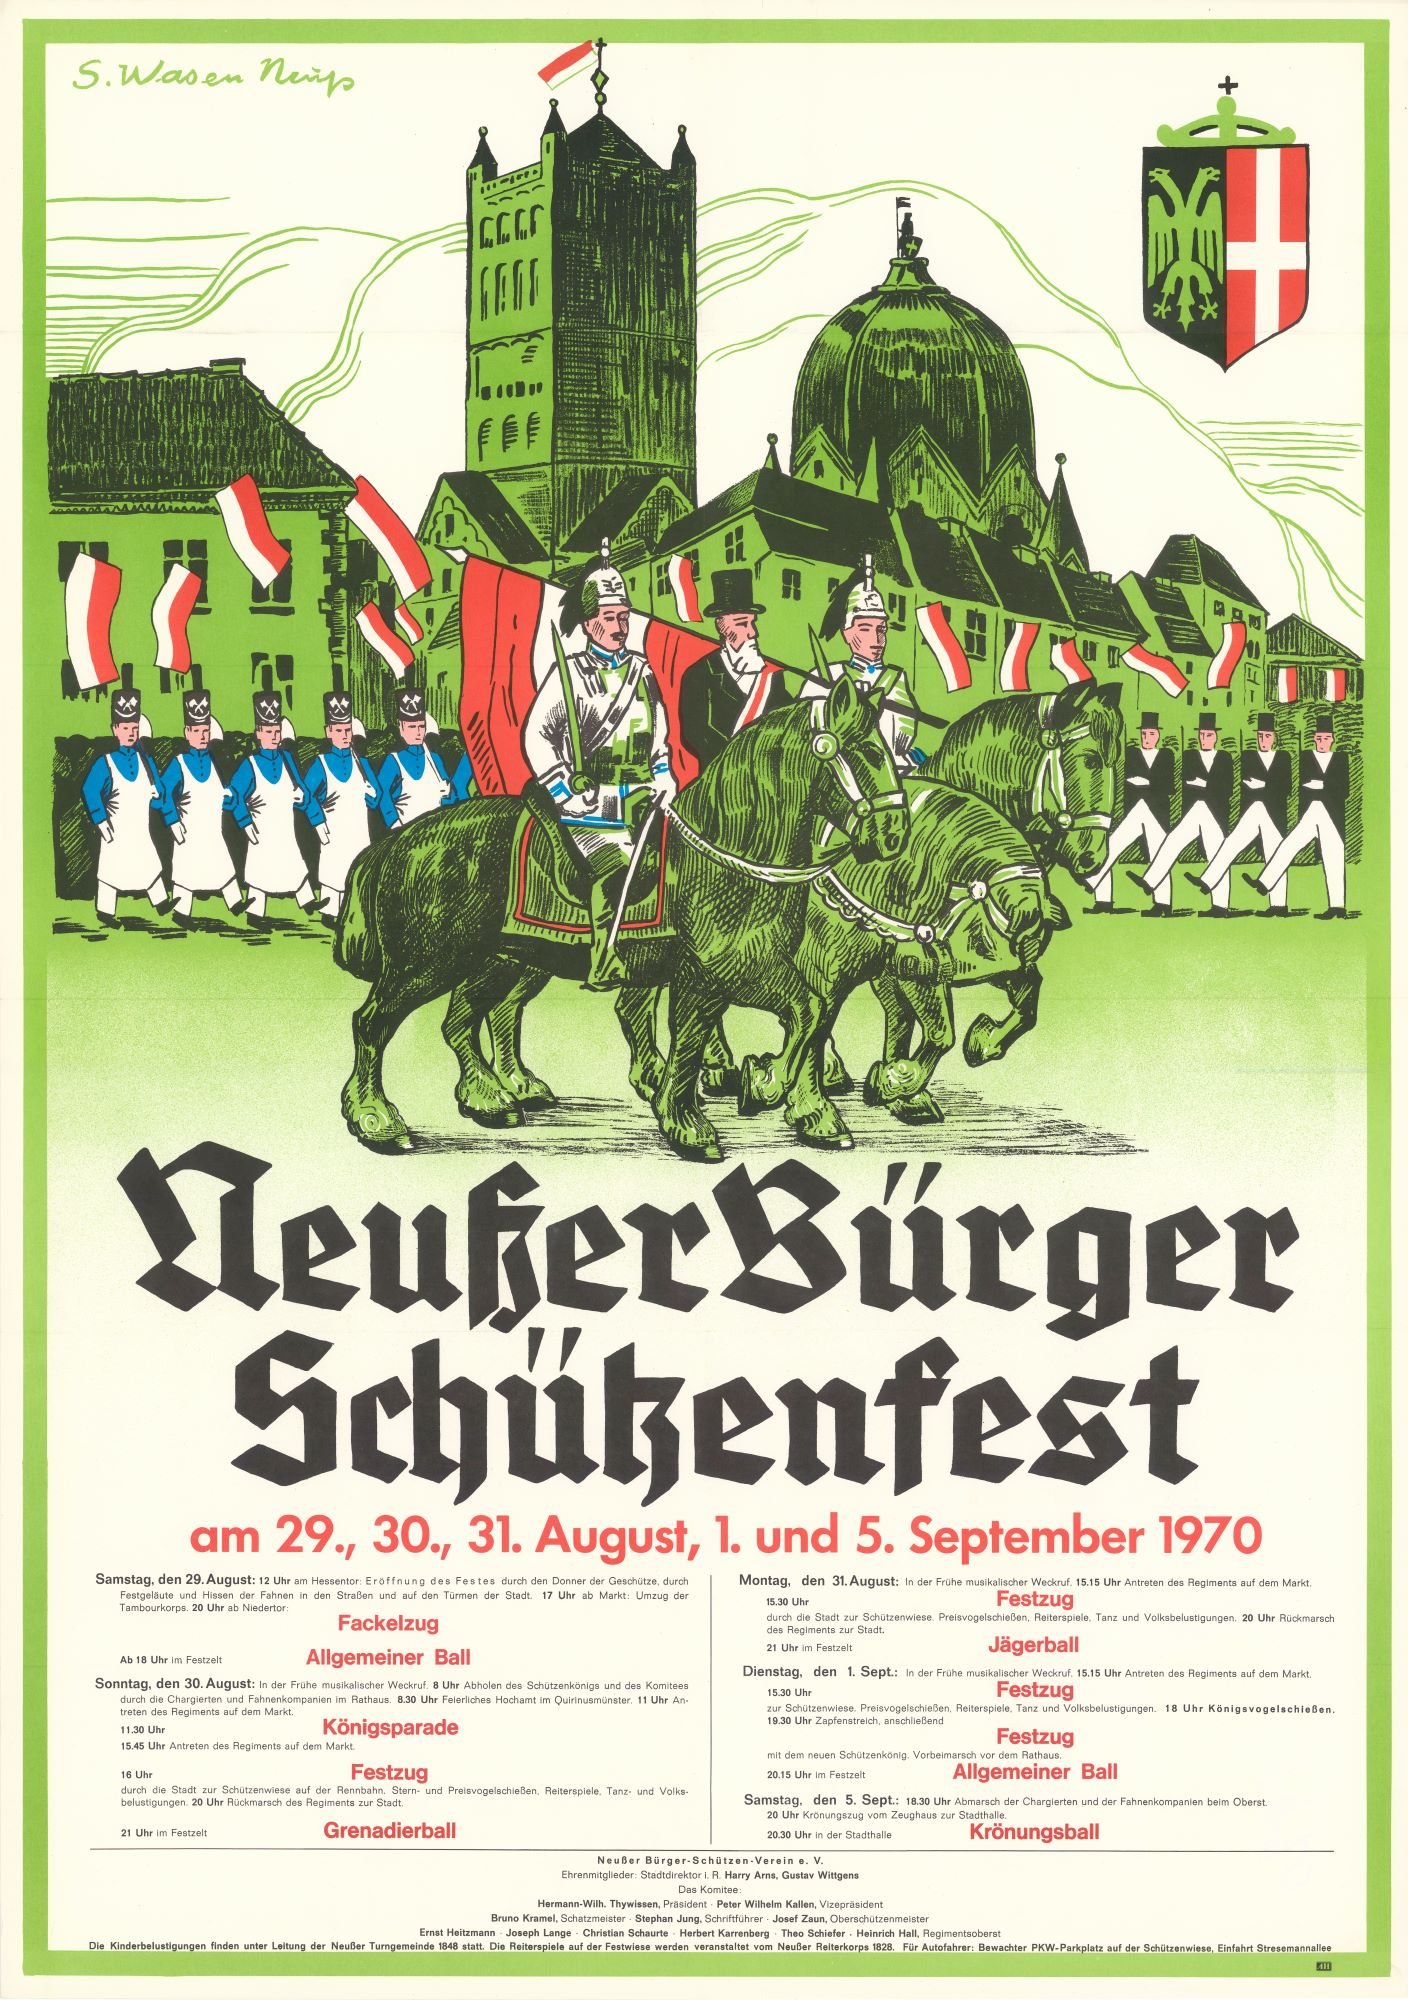 Festplakat Schützenfest Neuss 1970 (Rheinisches Schützenmuseum Neuss CC BY-NC-SA)